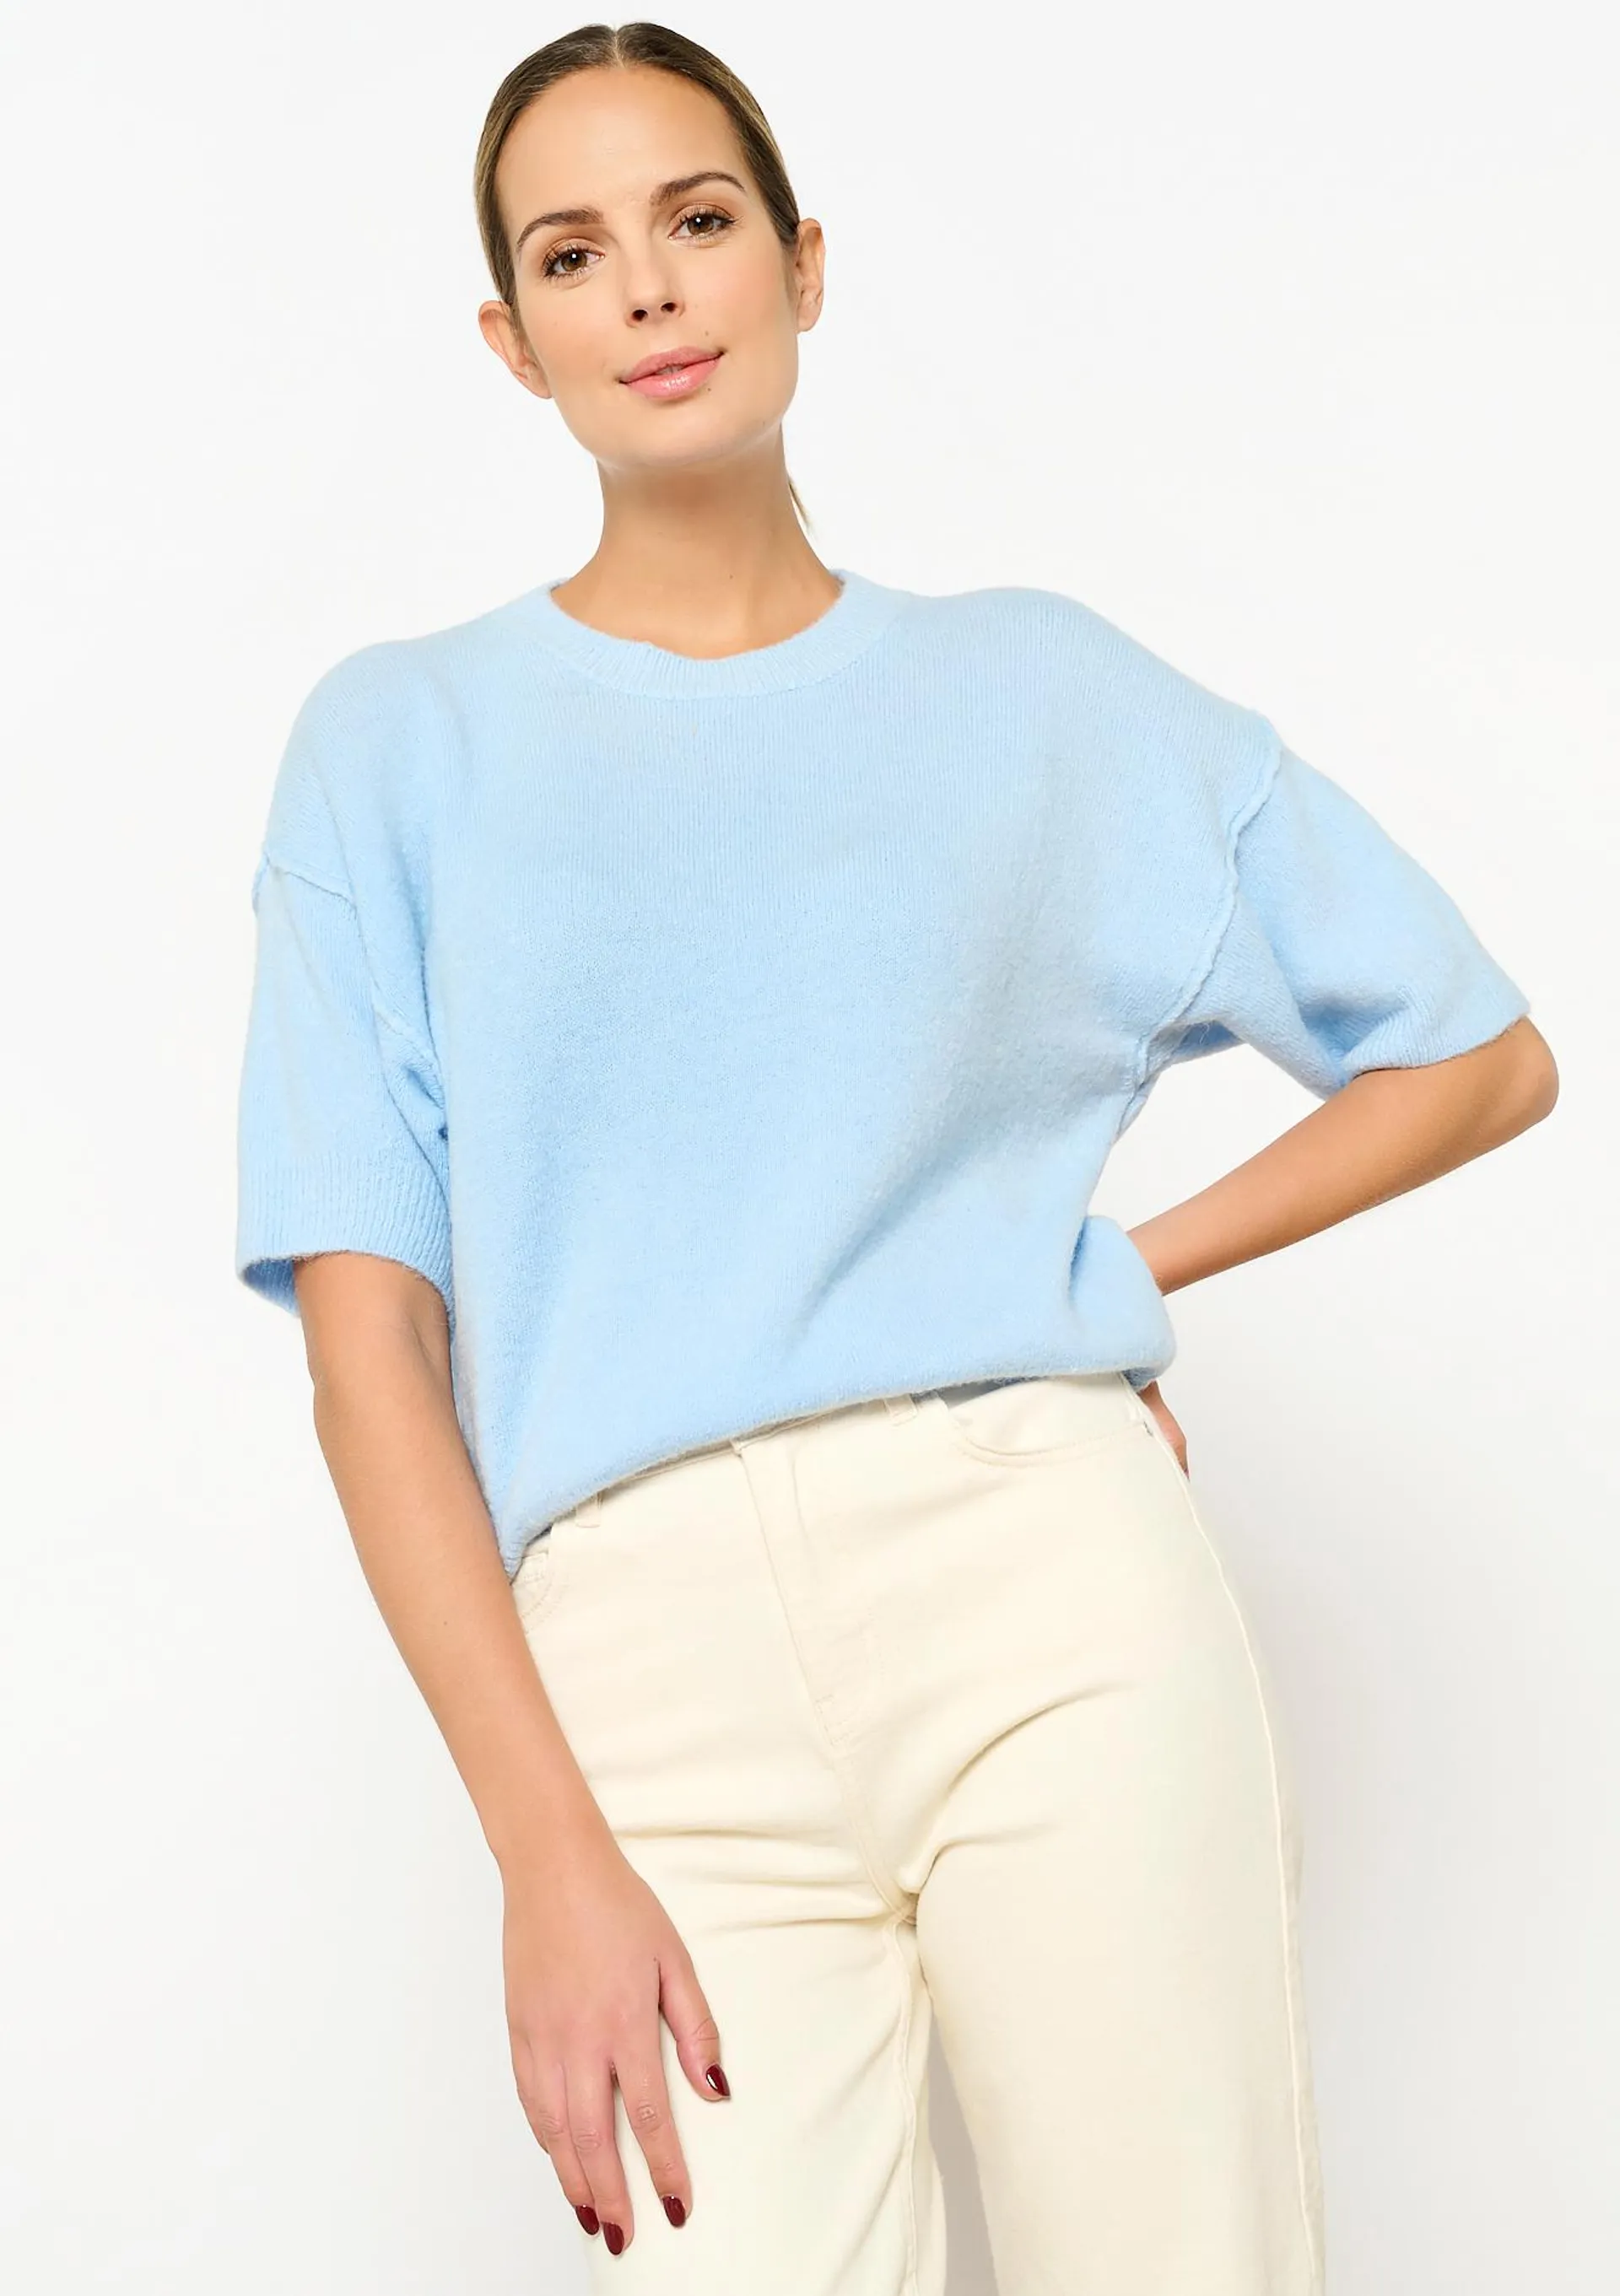 Short-sleeved pullover